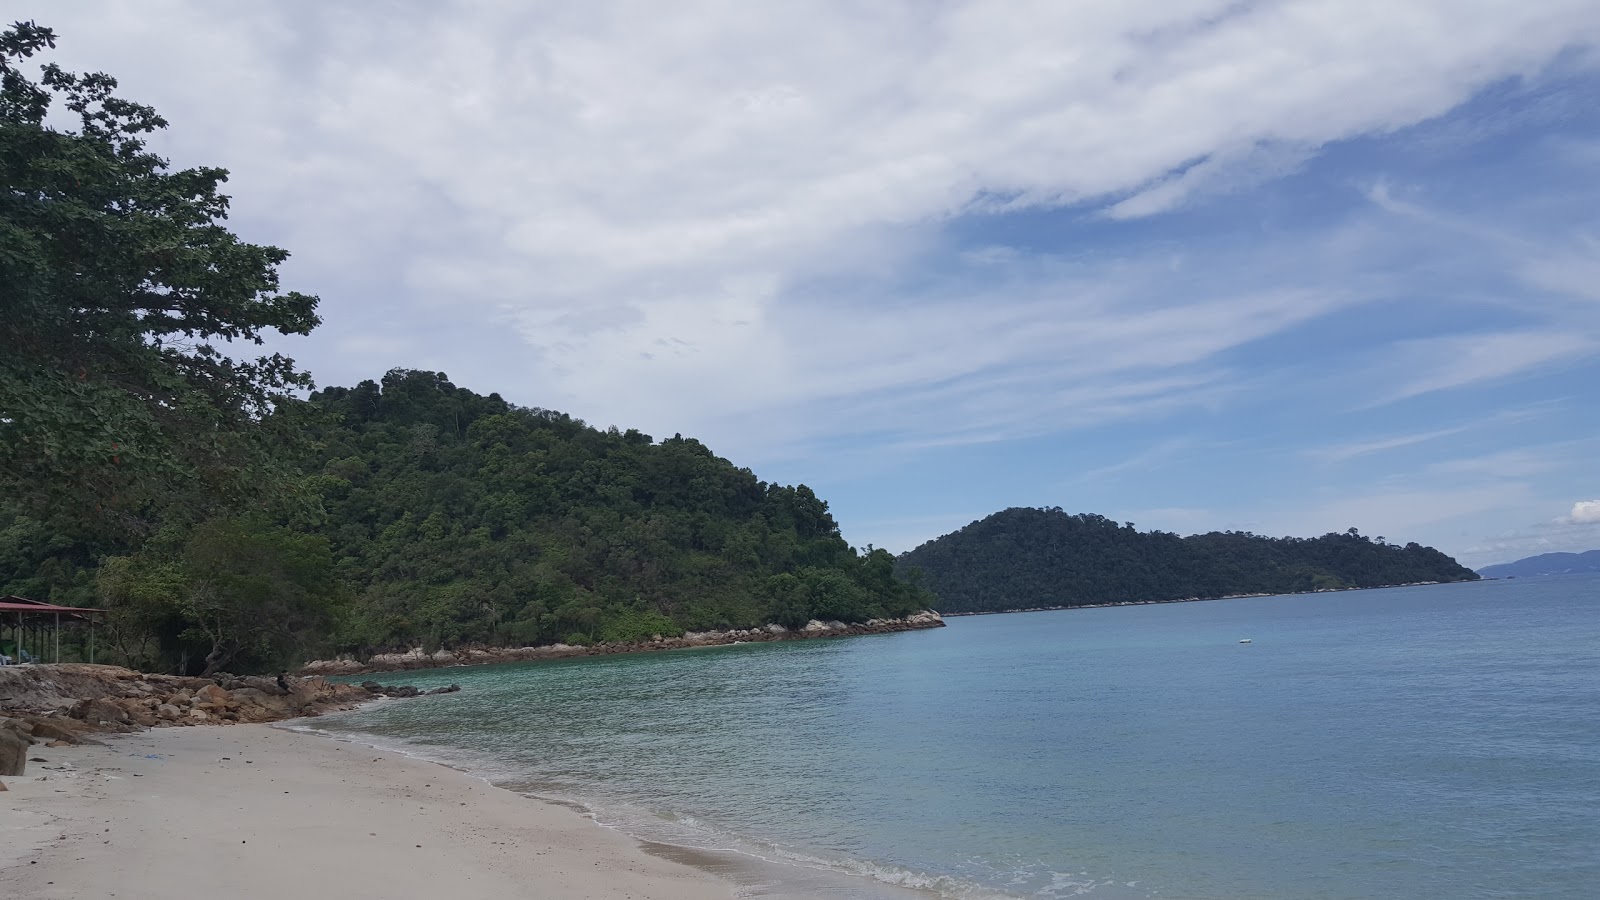 Pulau Lalang Beach'in fotoğrafı özel alan